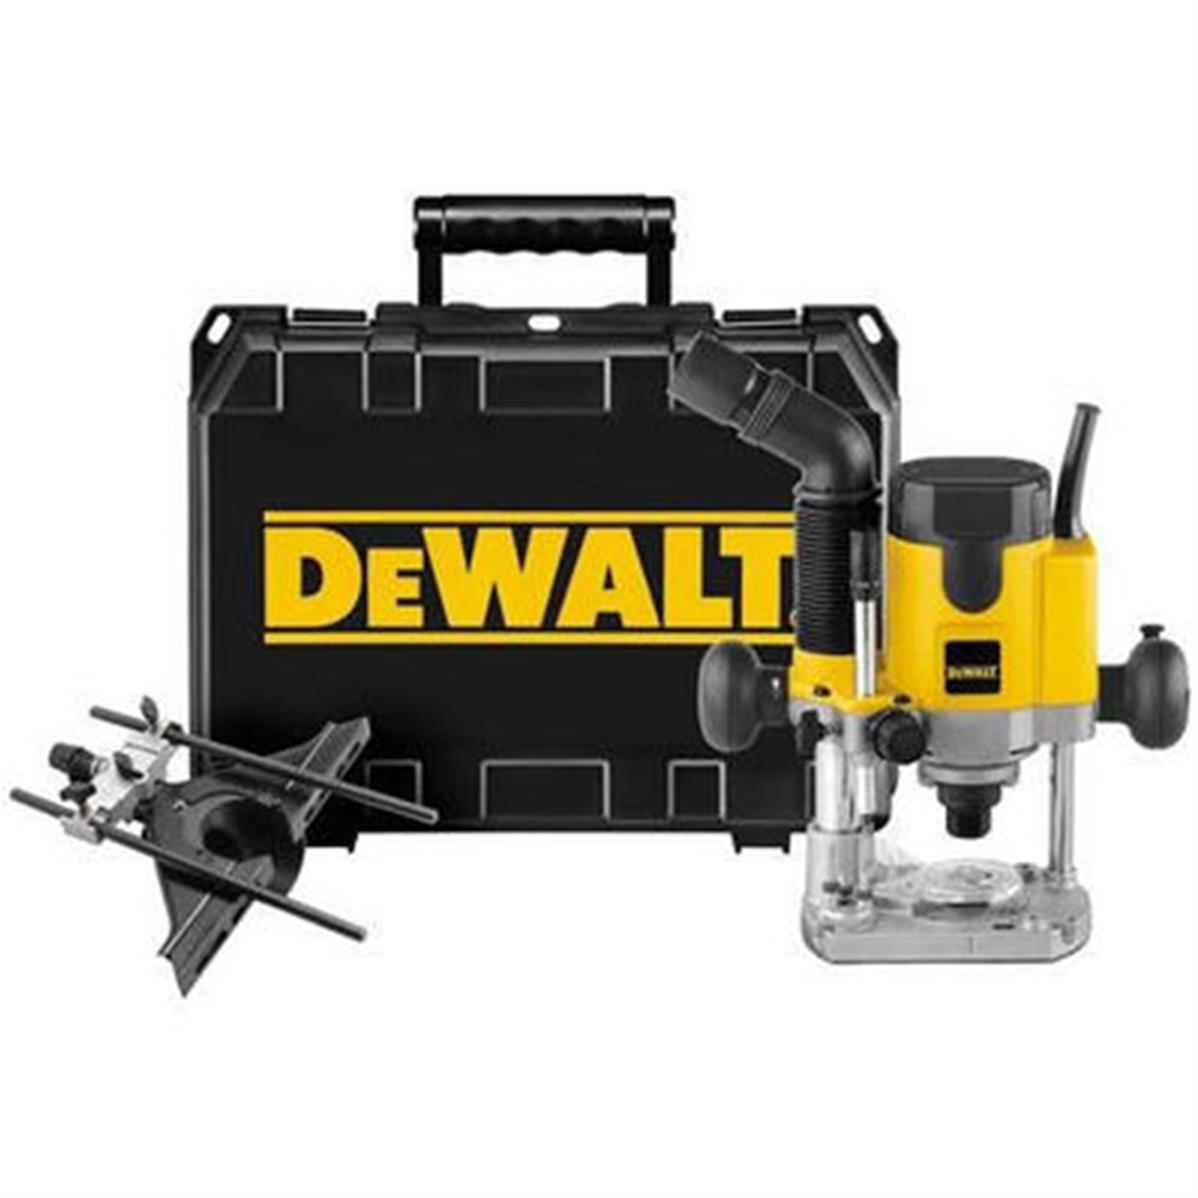 DEWALT Défonceuse précision 6-8 mm 1100 W DW621K - Outil Maxi Pro